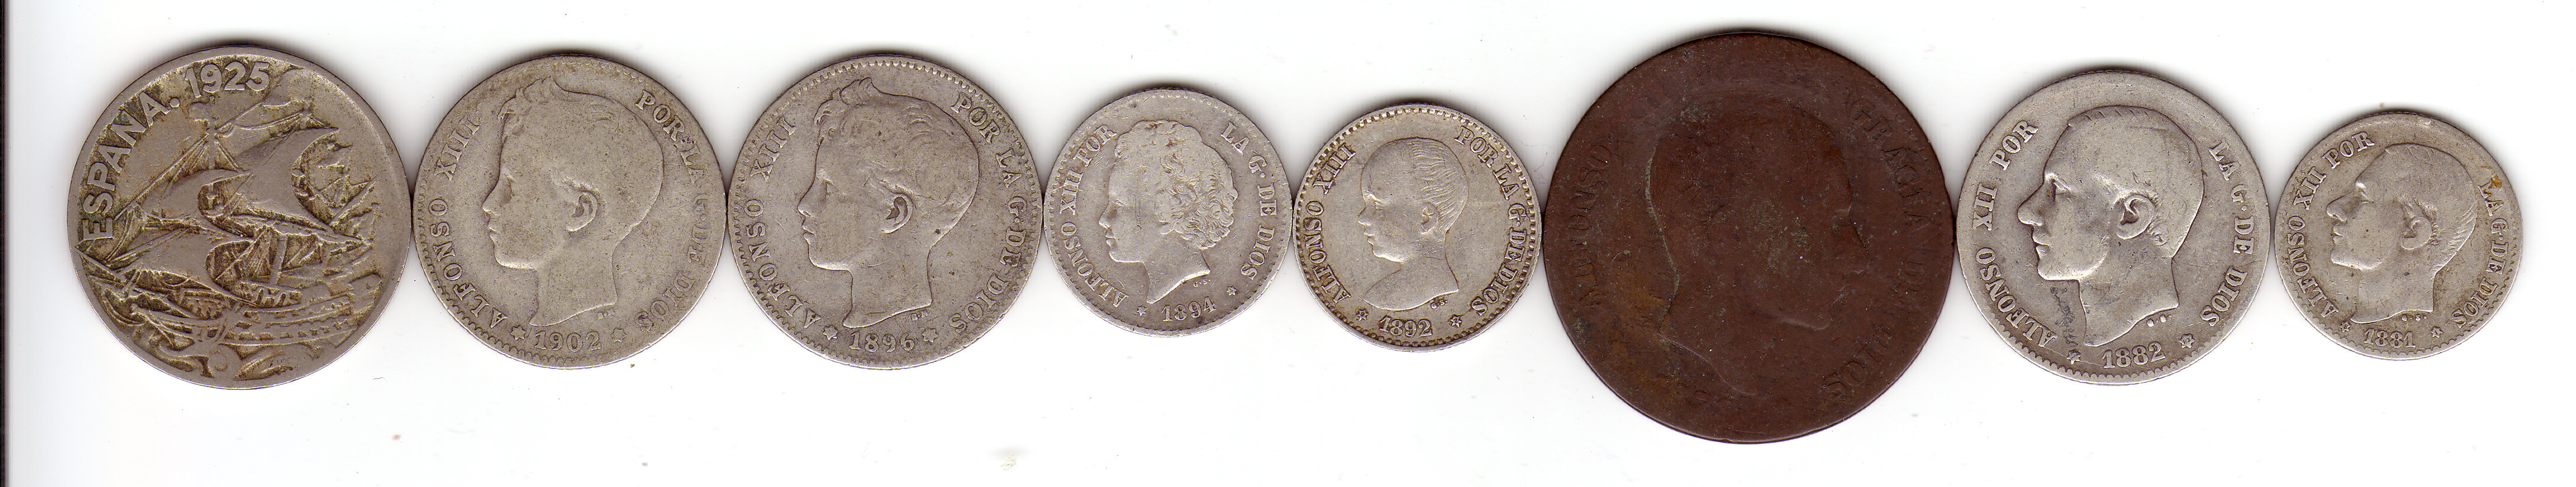 Spansih monarchic coins-observe